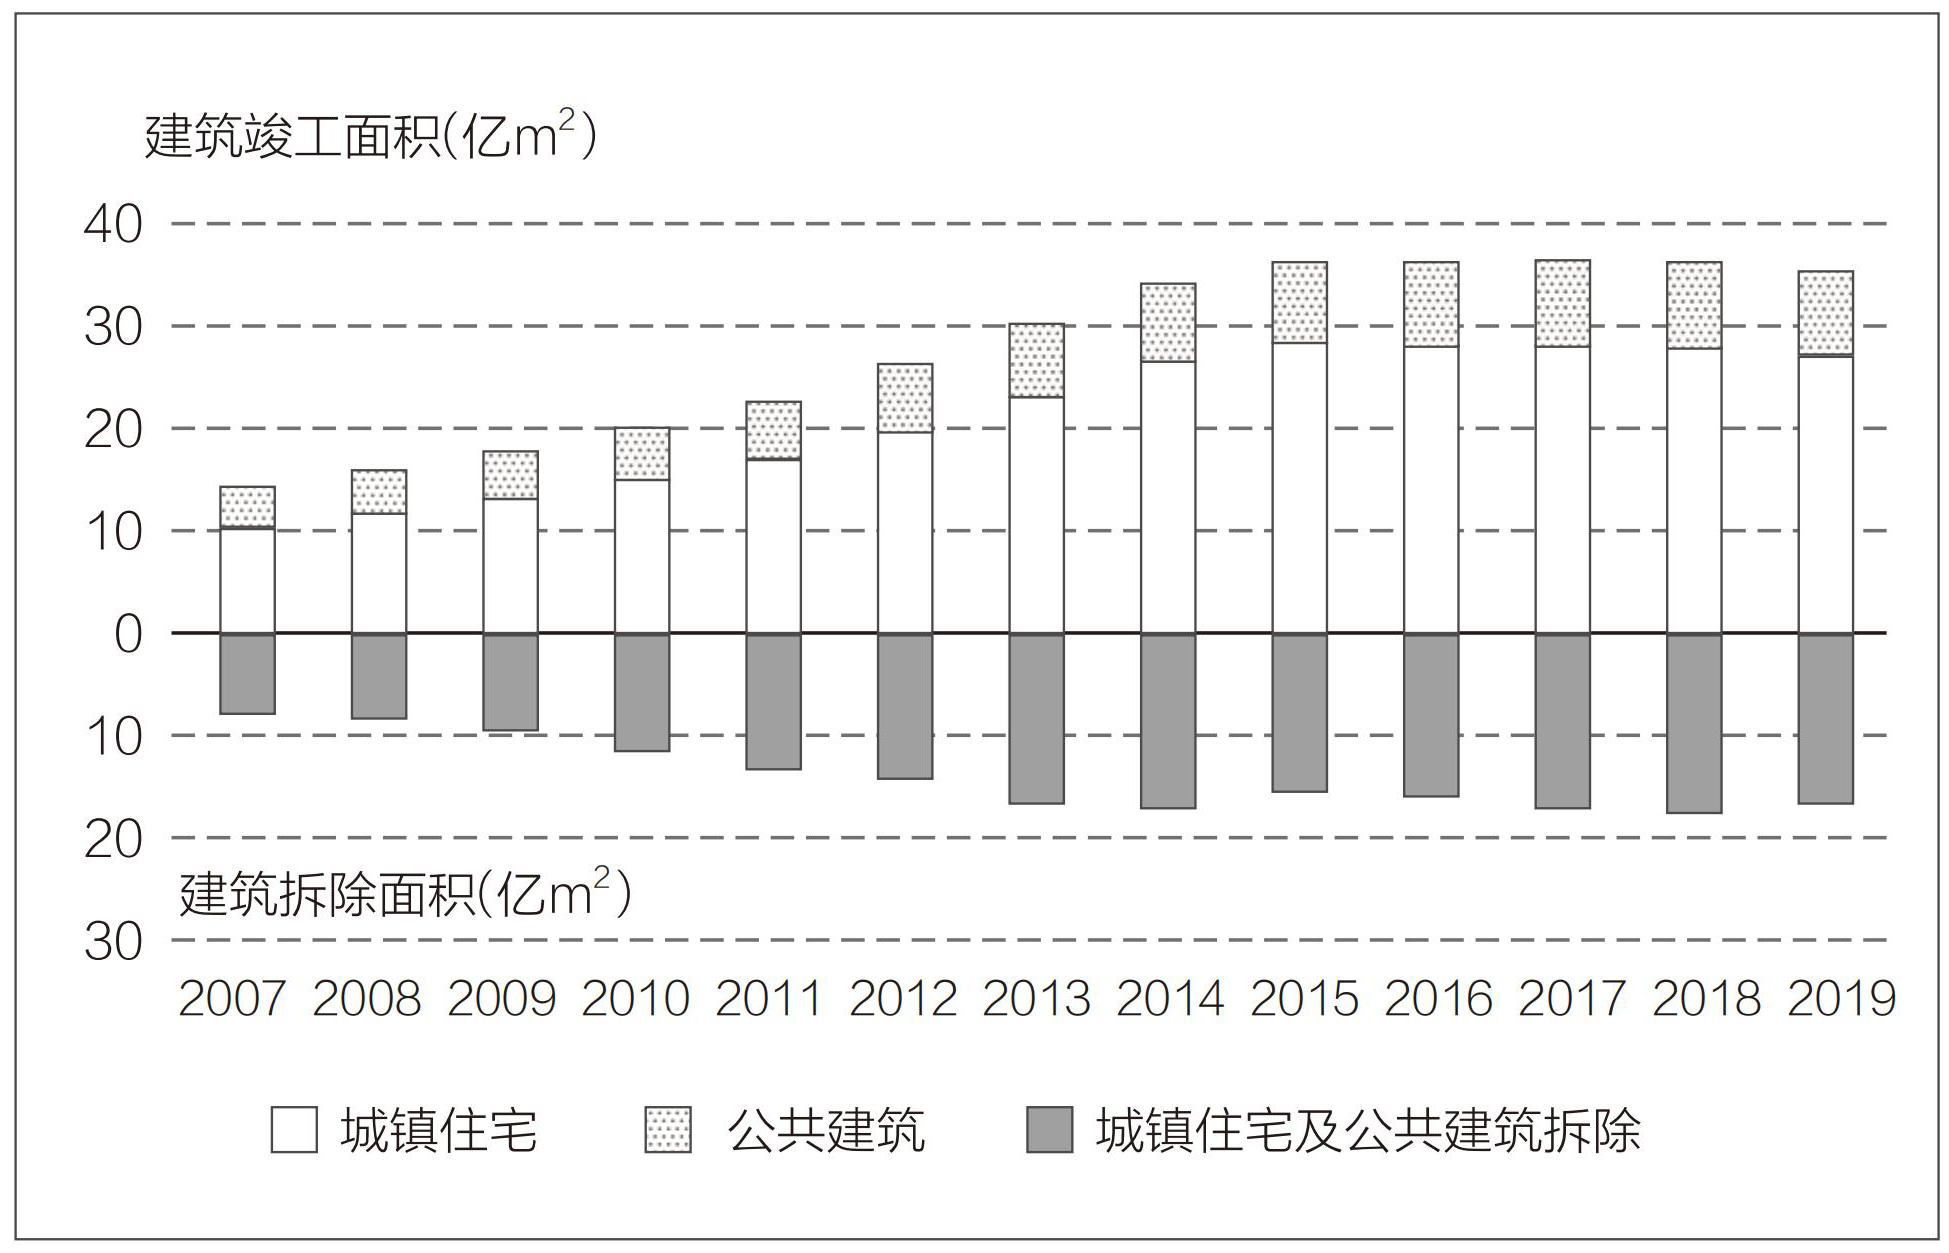 我国民用建筑历年面积变化趋势图（2007年—2019年）.jpg